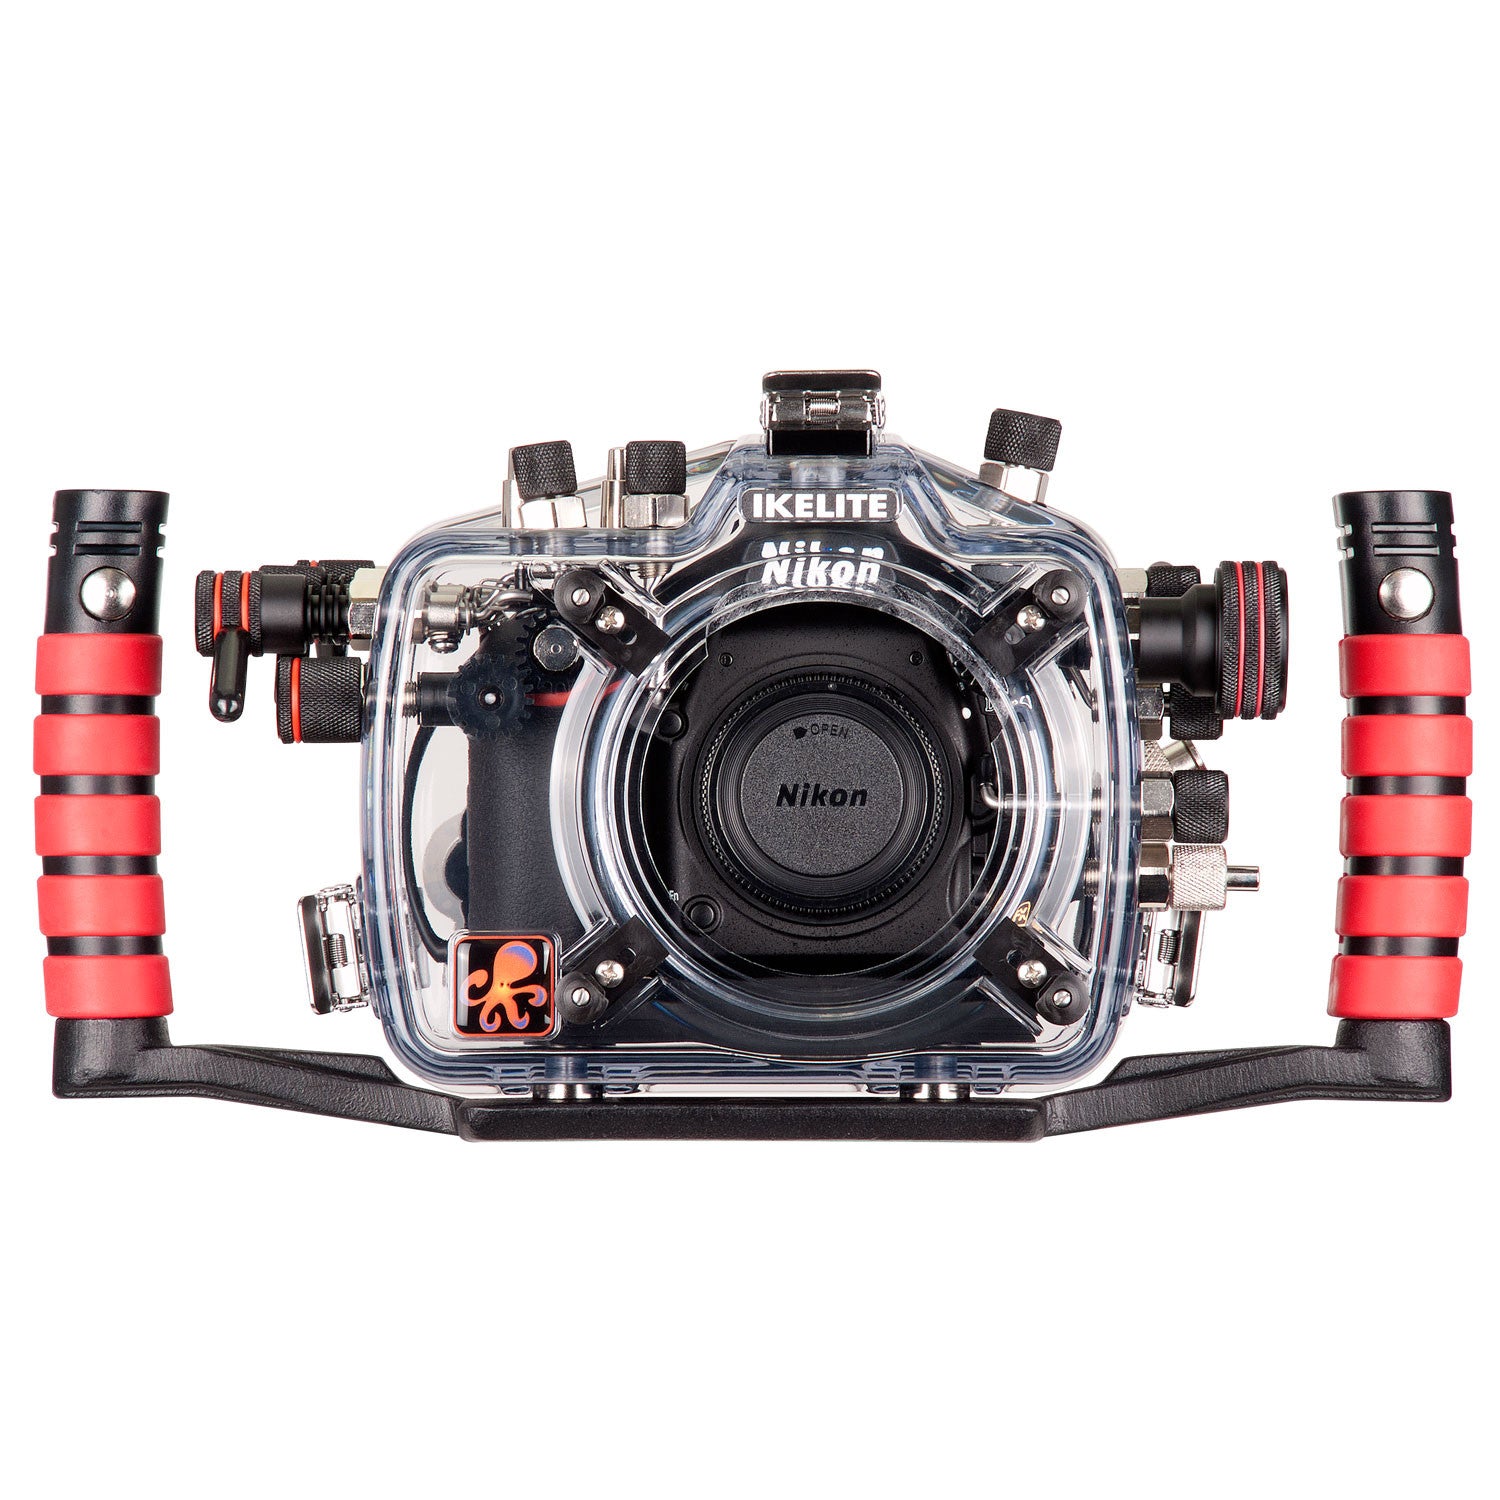 200FL Underwater TTL Housing for Nikon D750 DSLR Camera